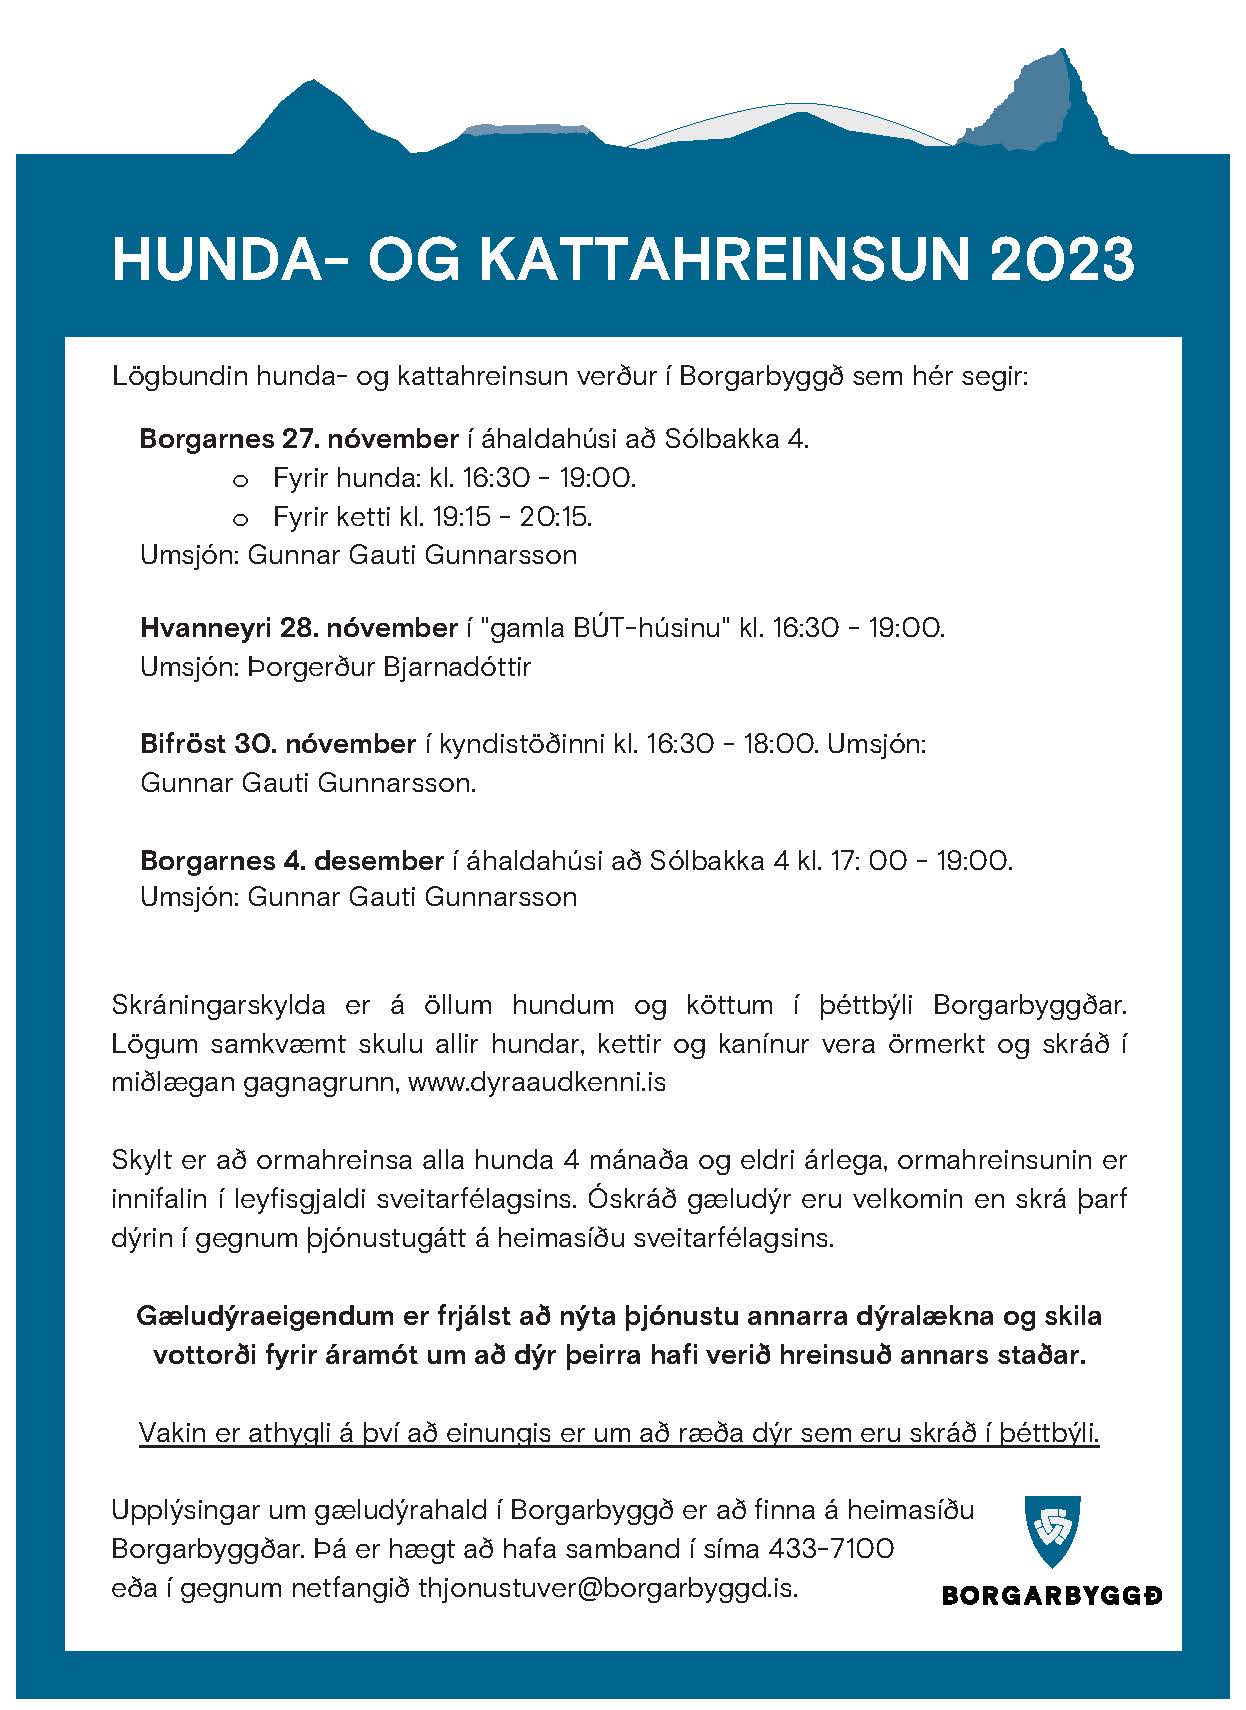 Featured image for “Hunda- og kattahreinsun 2023”